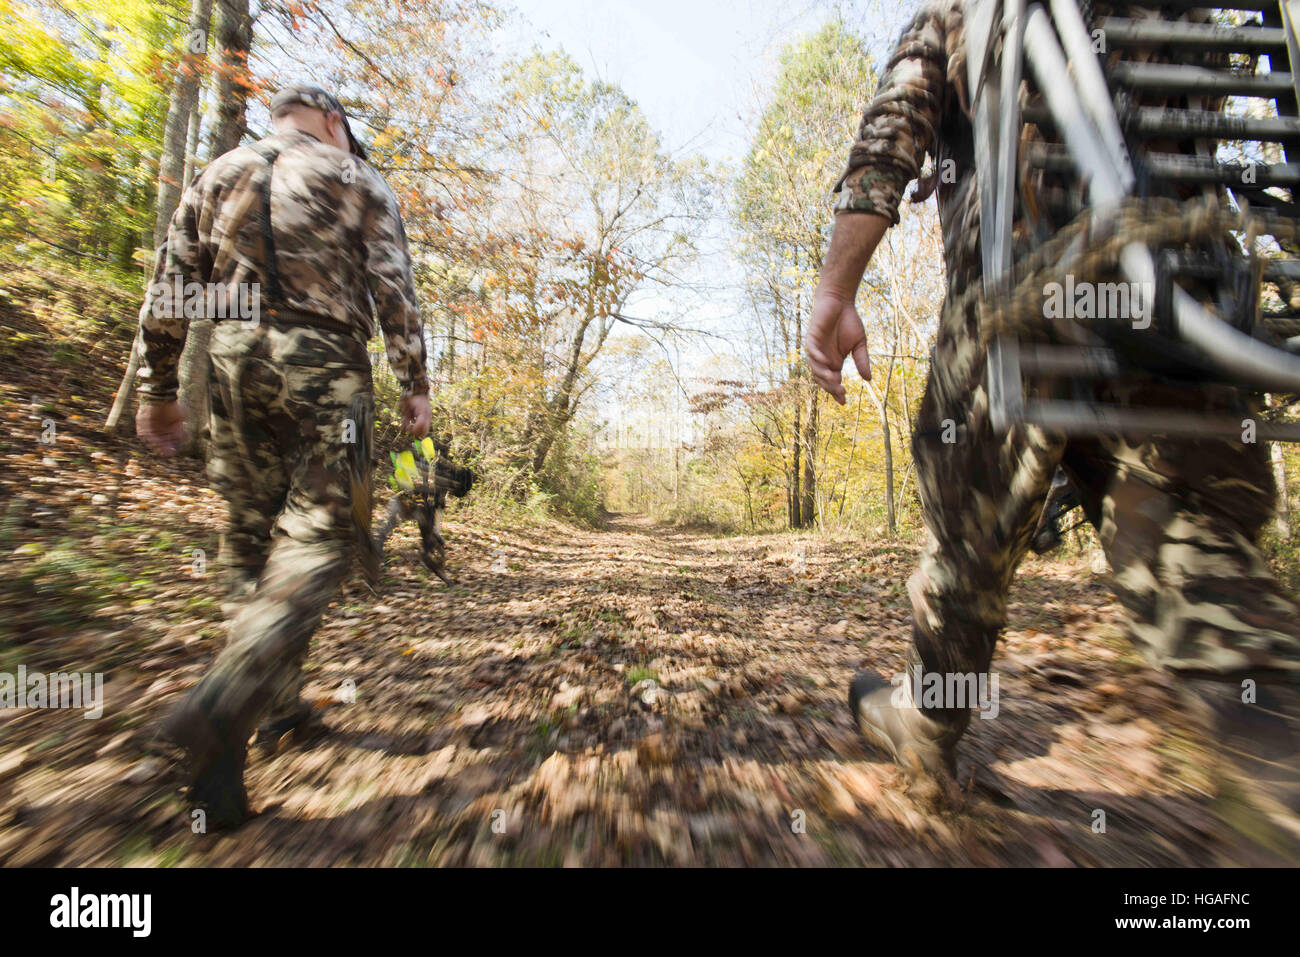 Owensboro, Kentucky, Estados Unidos. 29 Oct, 2016. Jason Camp y Keith  Conklin cazar venado en la Western Kentucky durante el otoño bache. Ellos  rattle cornamenta de ciervo y utilizar soportes para cazar